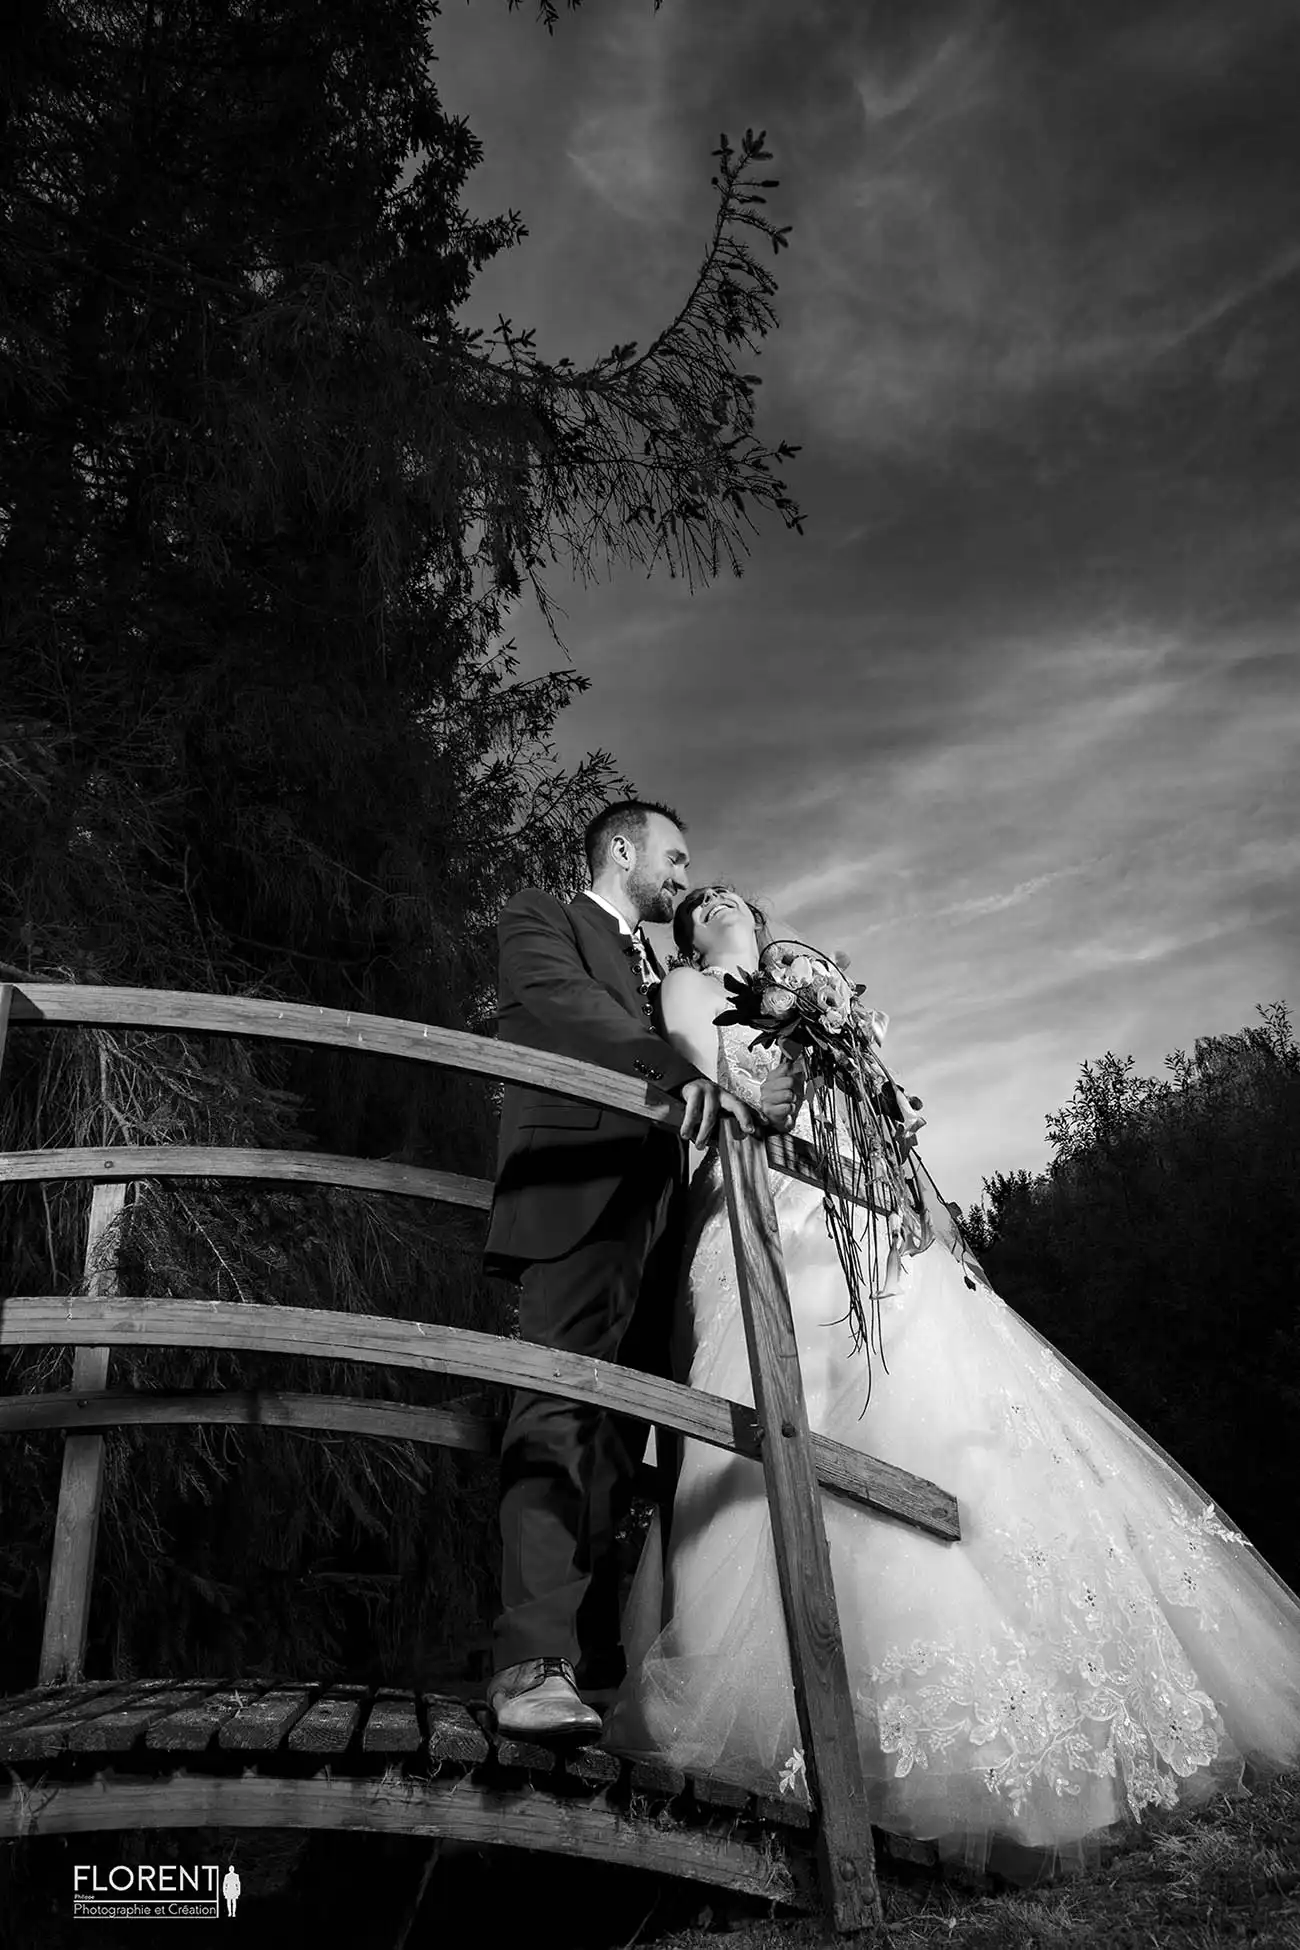 photographe mariage lille superbes seance tendresse maries en noir et blanc sur un pont florent studio boulogne sur mer lille le touquet paris calais